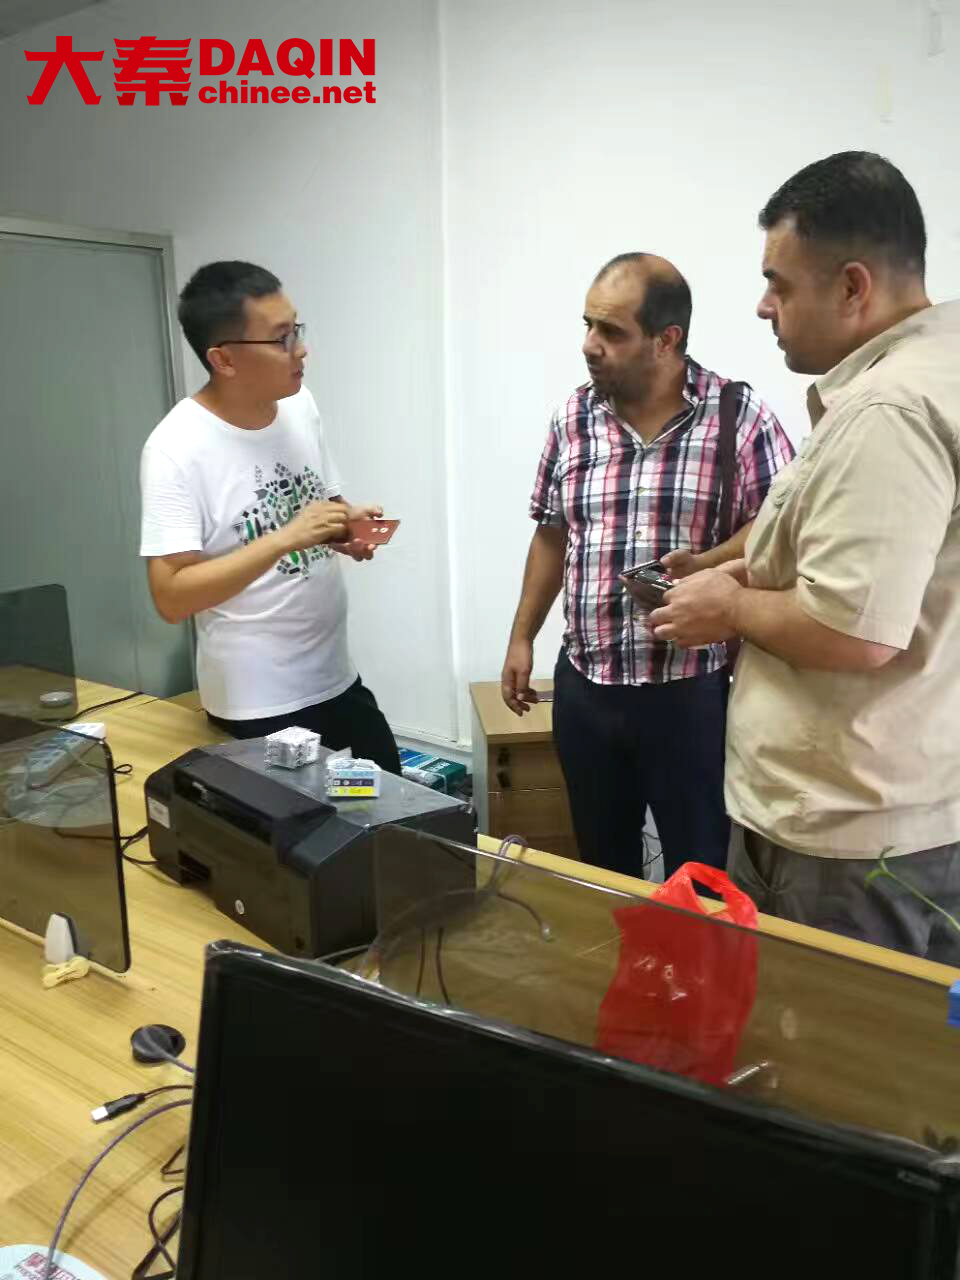 Customer visit DAQIN guangzhou branch 1